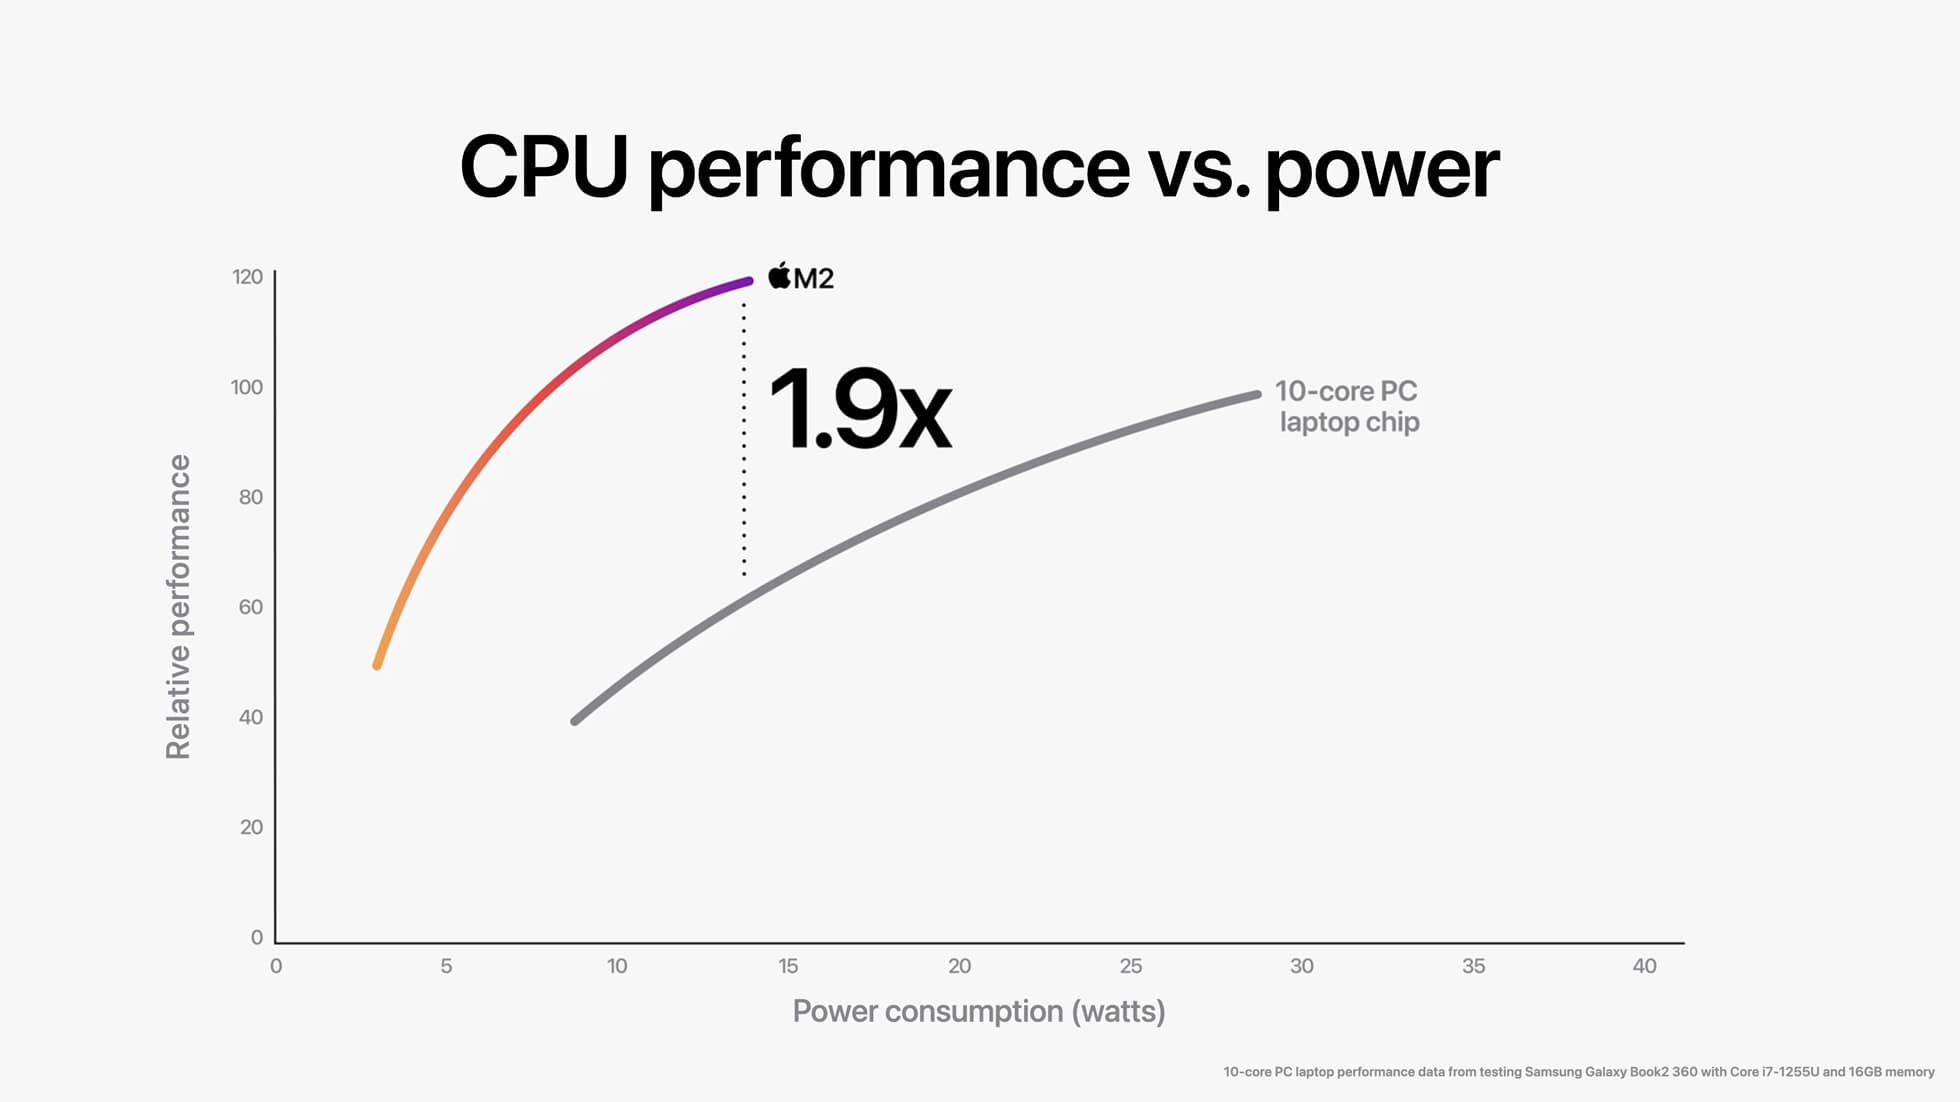 Apple M2 與 10 核心 PC 筆記型電腦晶片相比，M2 晶片的 CPU 在同等功耗下能帶來近兩倍的效能。